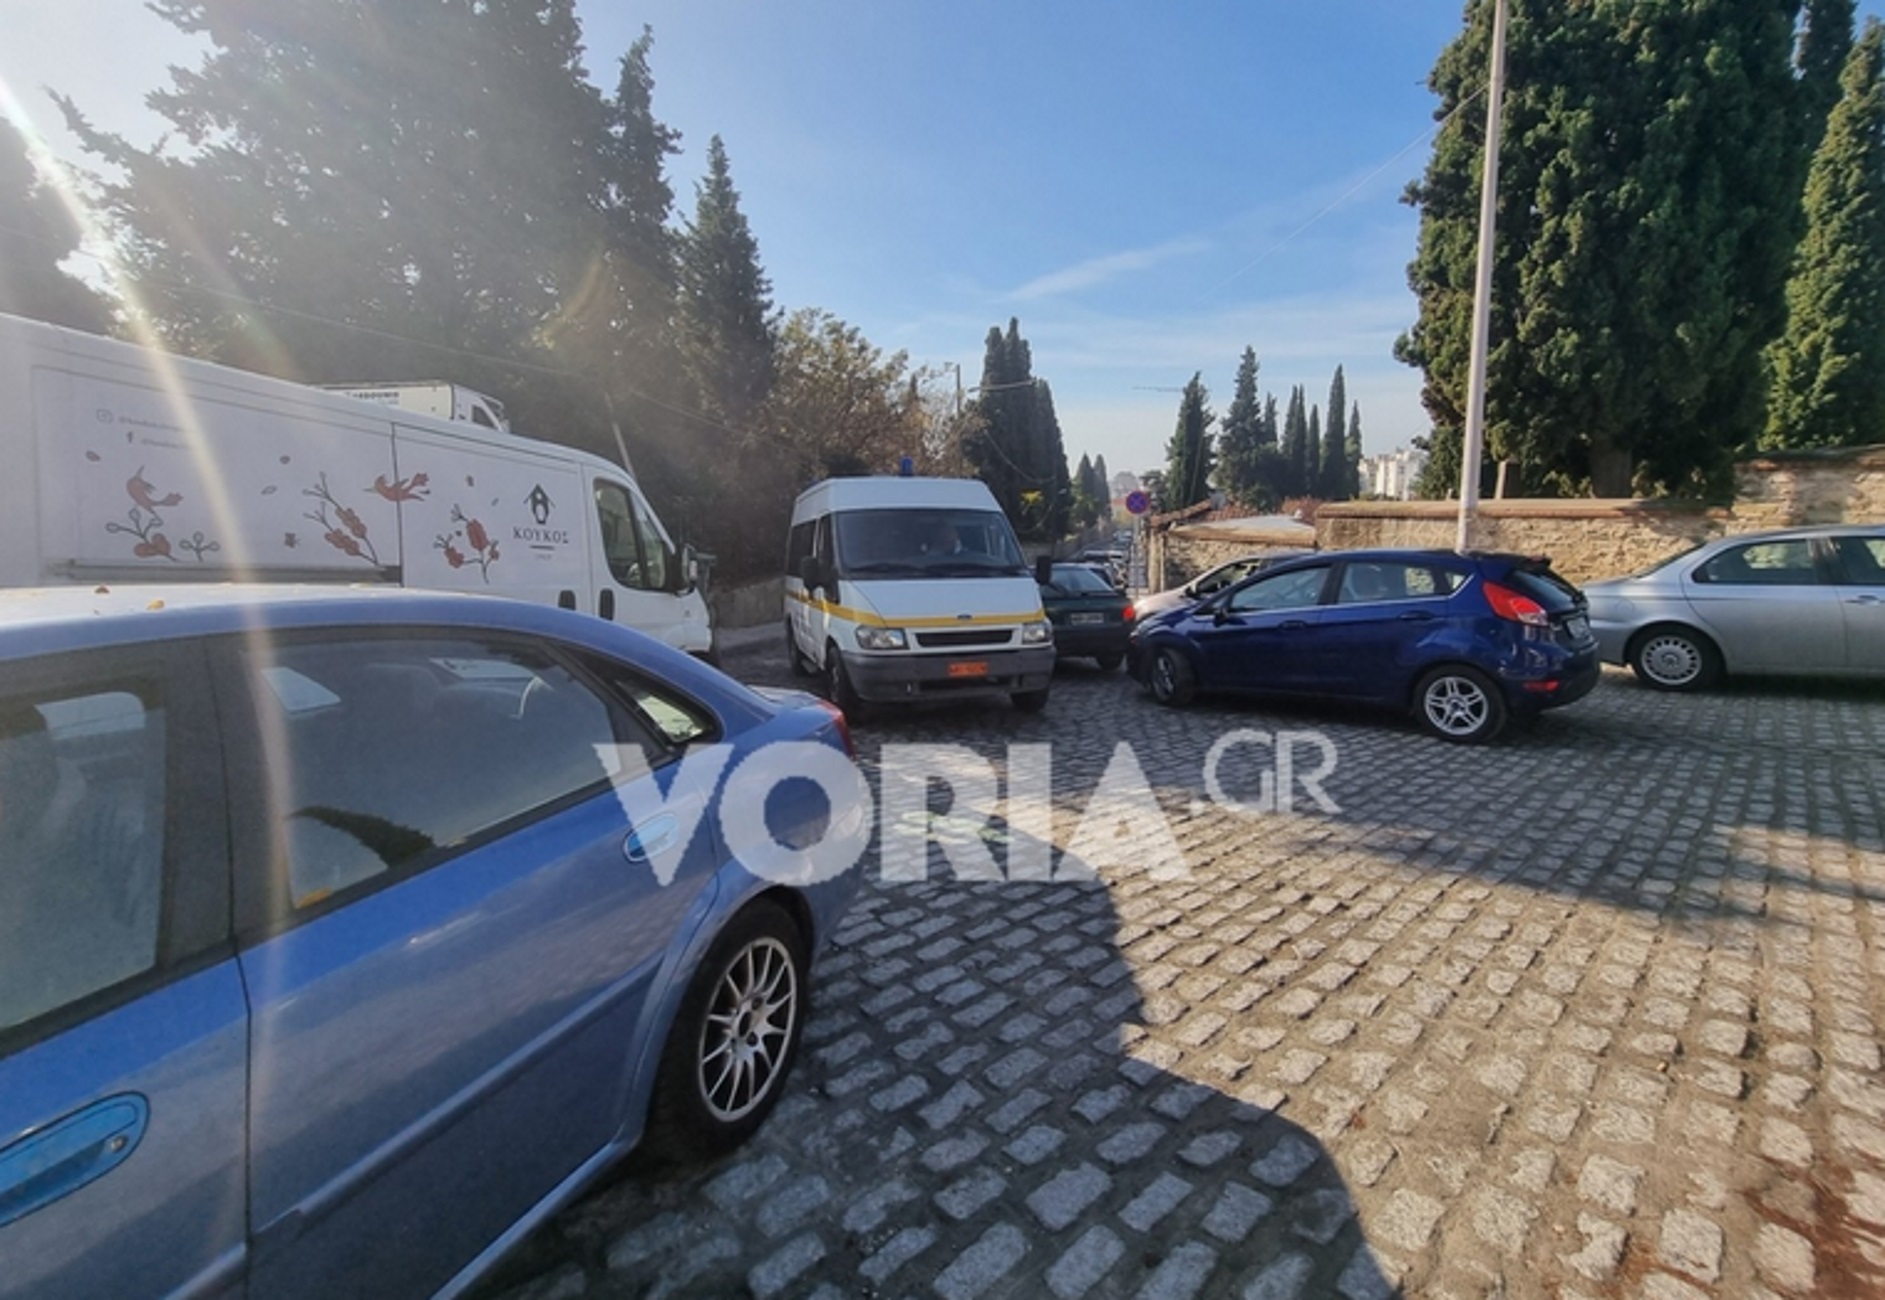 Θεσσαλονίκη: Ρεσιτάλ ασυνειδησίας από οδηγούς που παρκάρουν και μπλοκάρουν την είσοδο νοσοκομείου